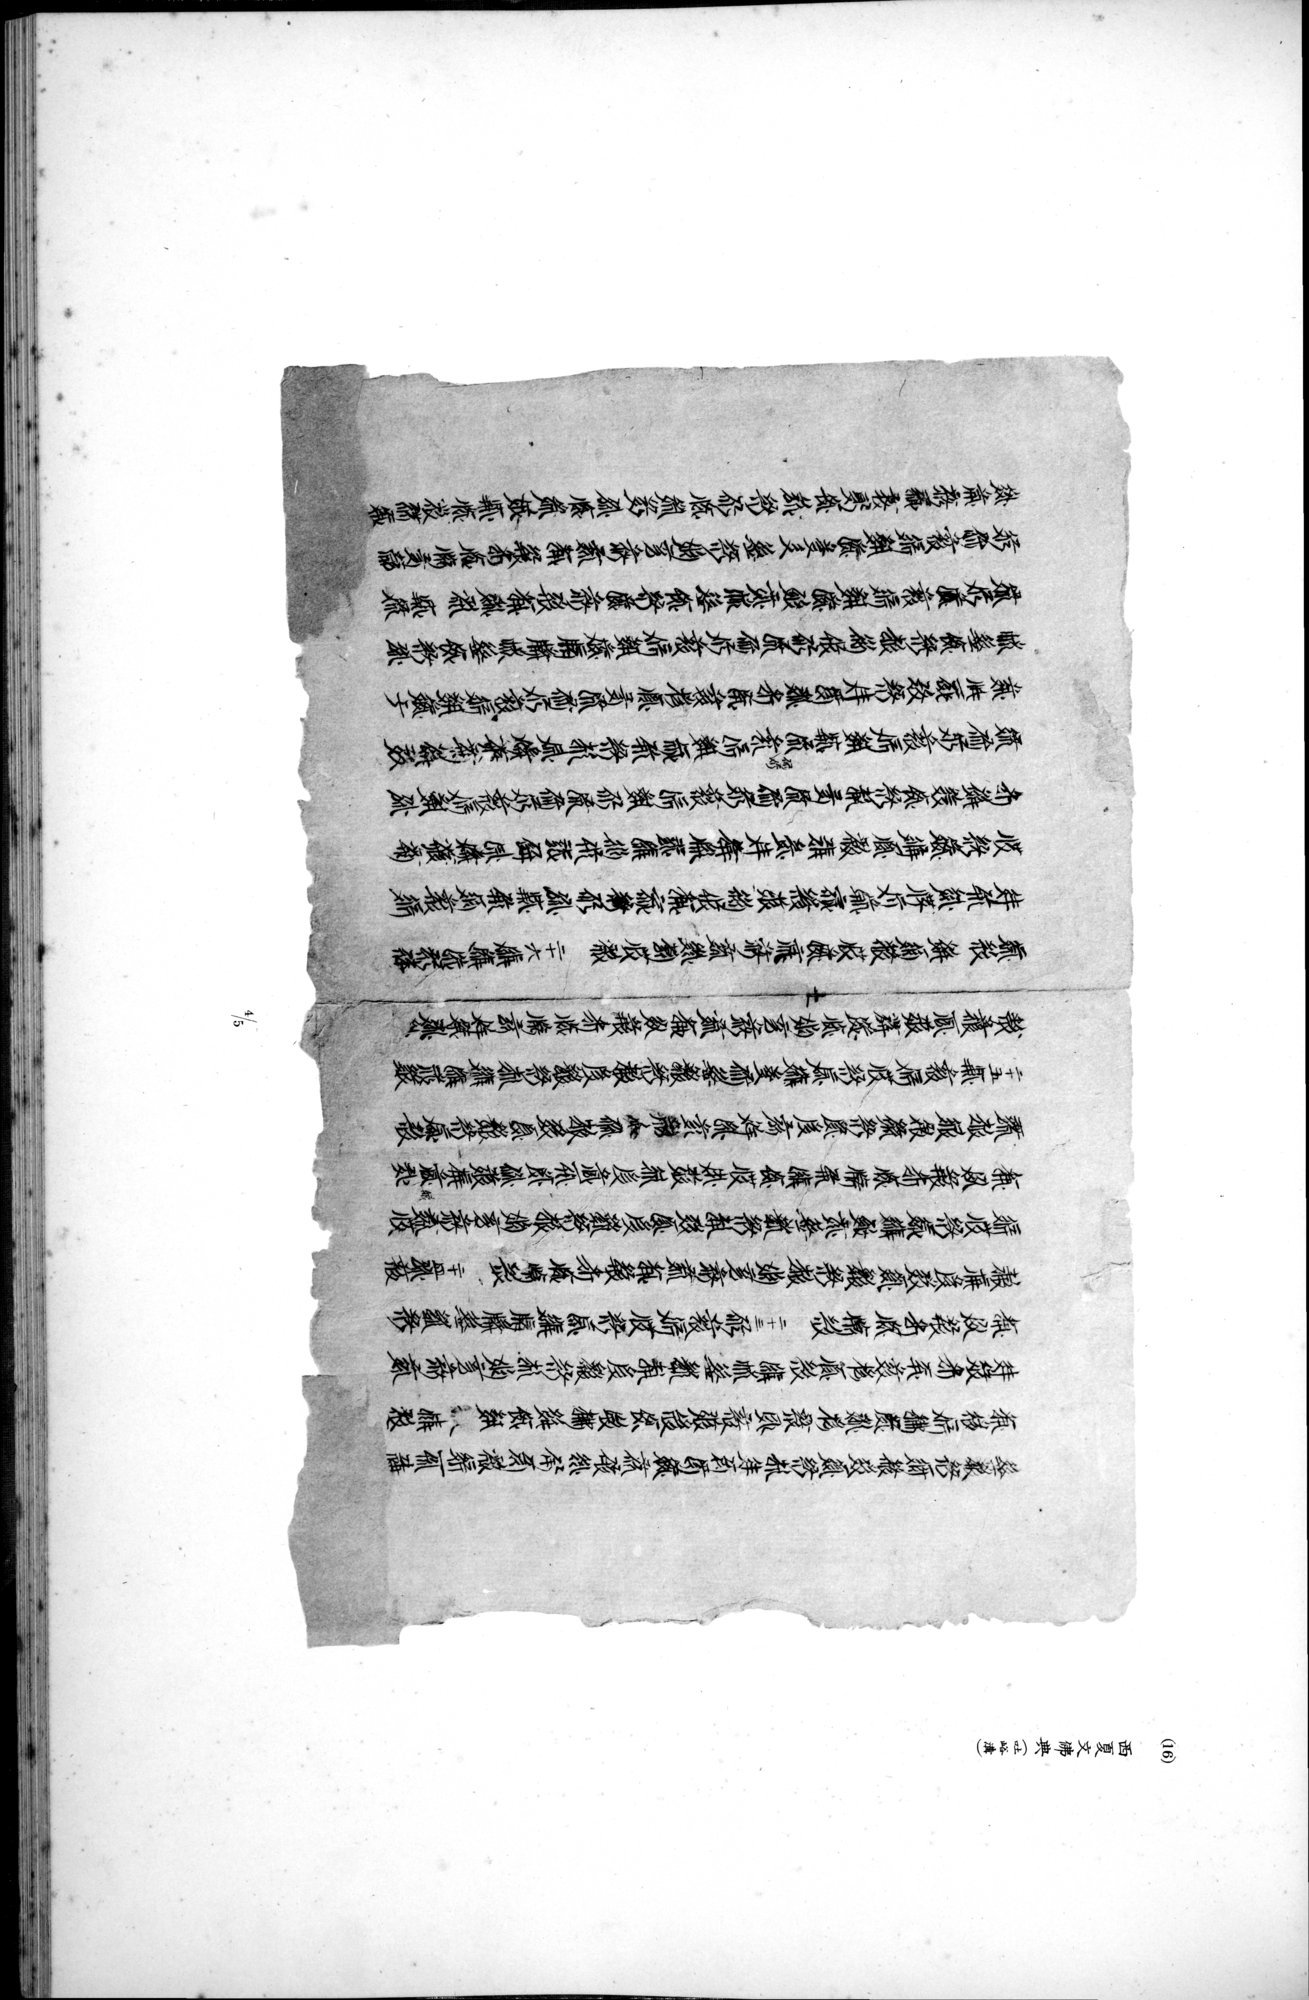 西域考古図譜 : vol.2 / Page 285 (Grayscale High Resolution Image)